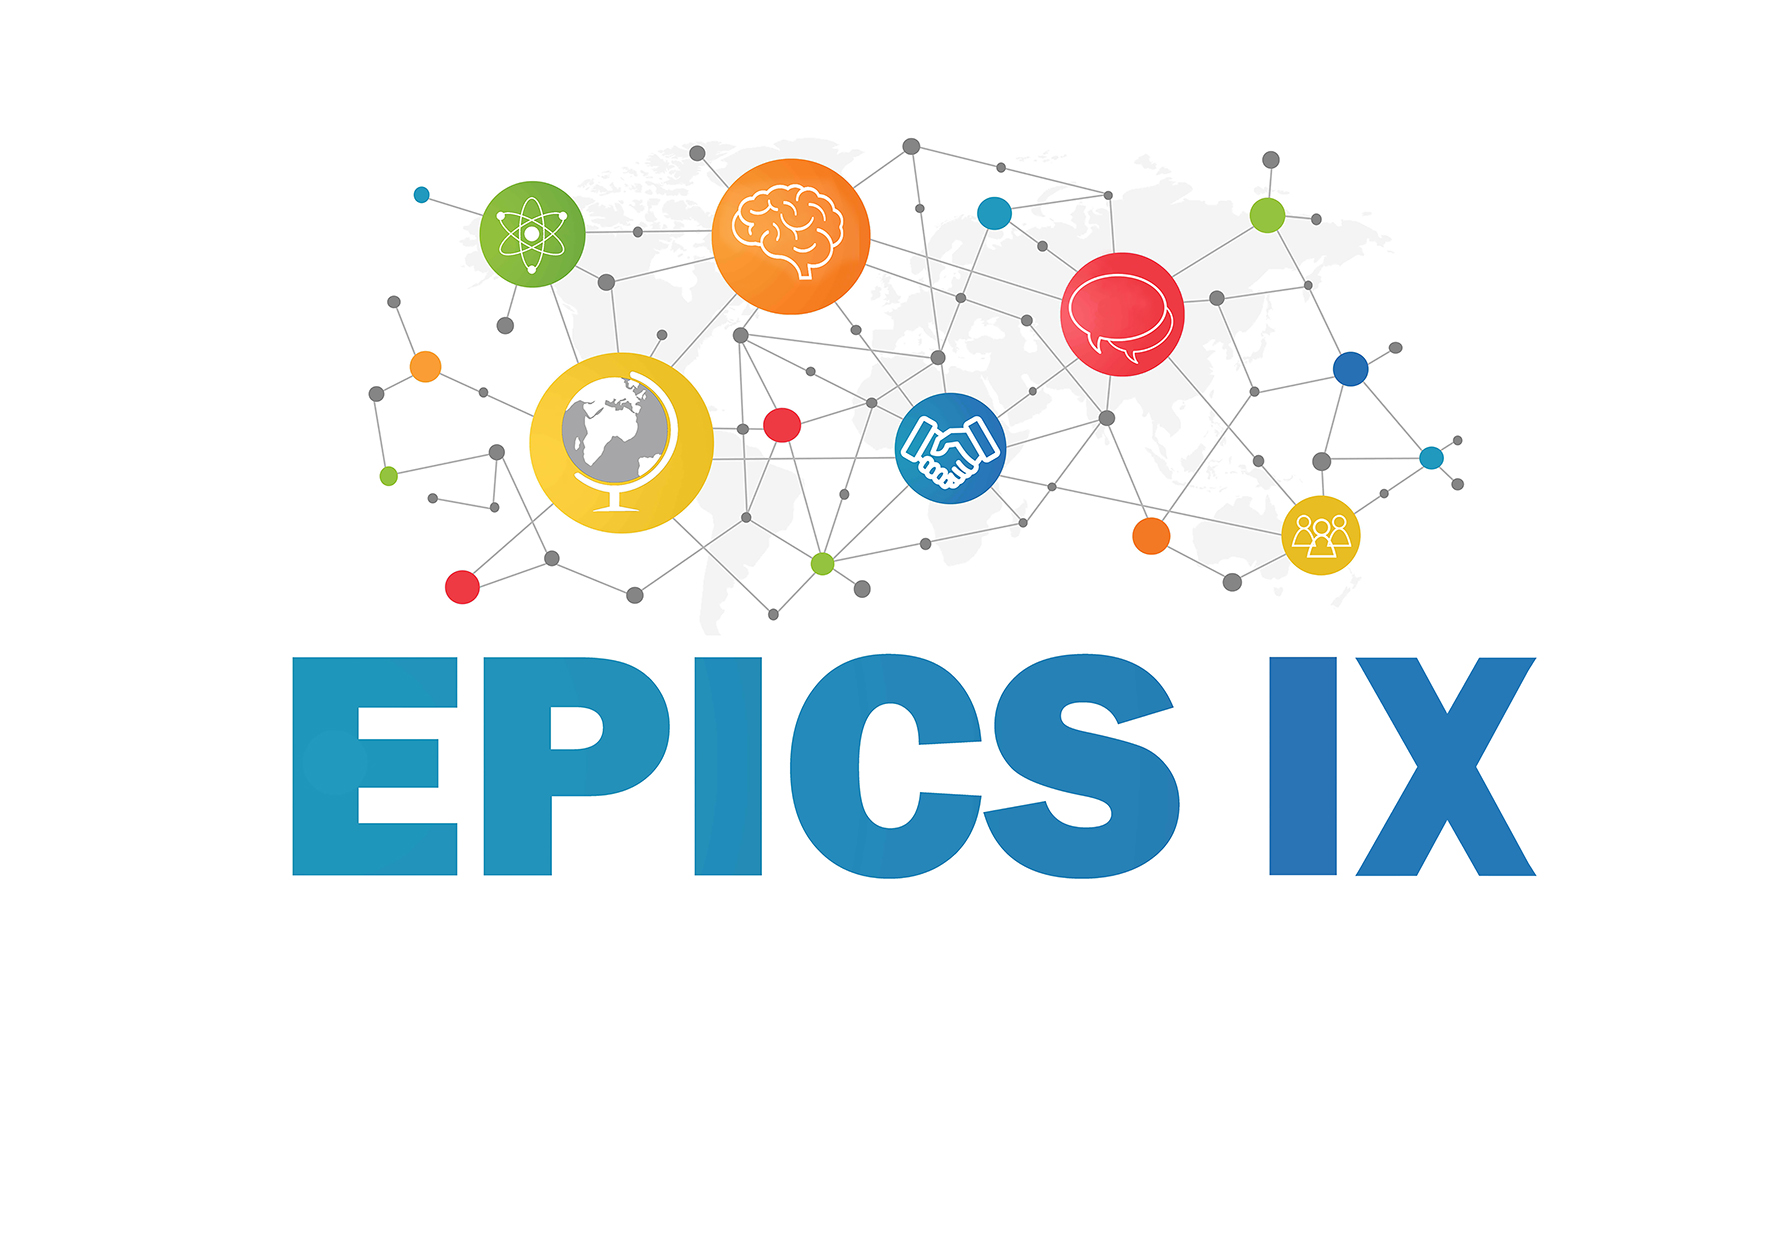 epics IX 10X15